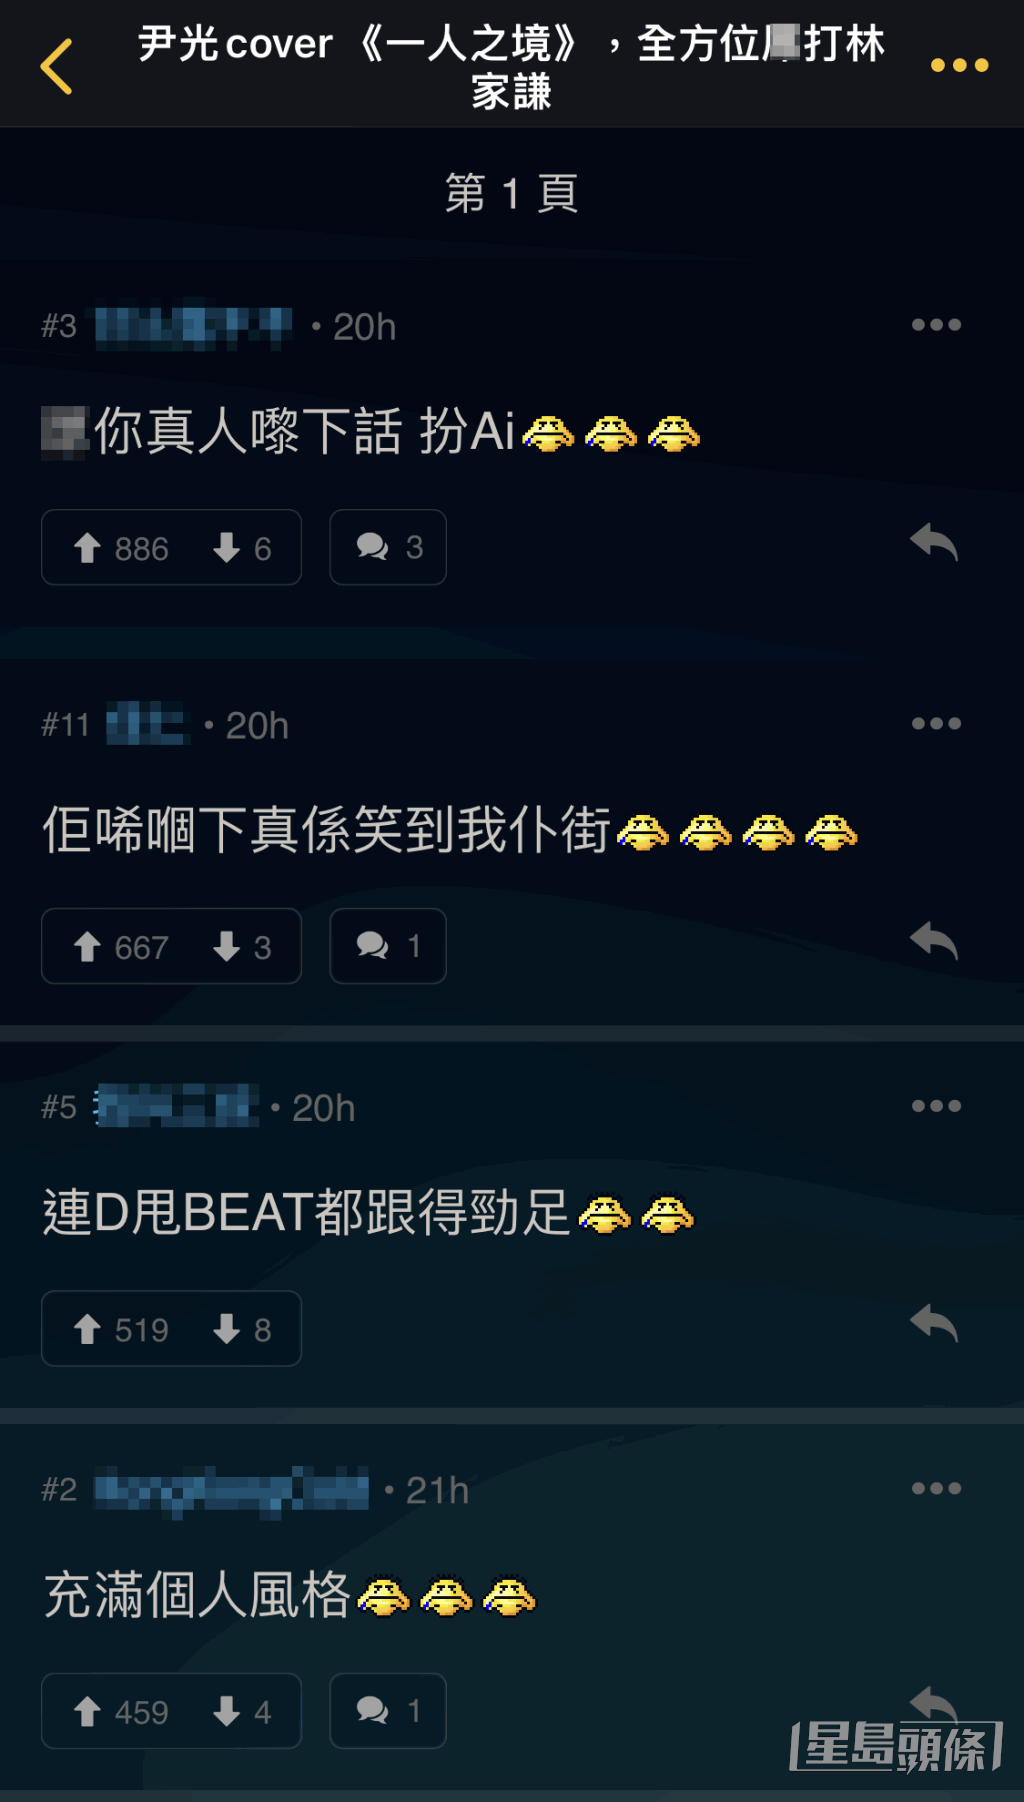 网民笑说AI尹光唱《一人之境》连甩beat都跟足。